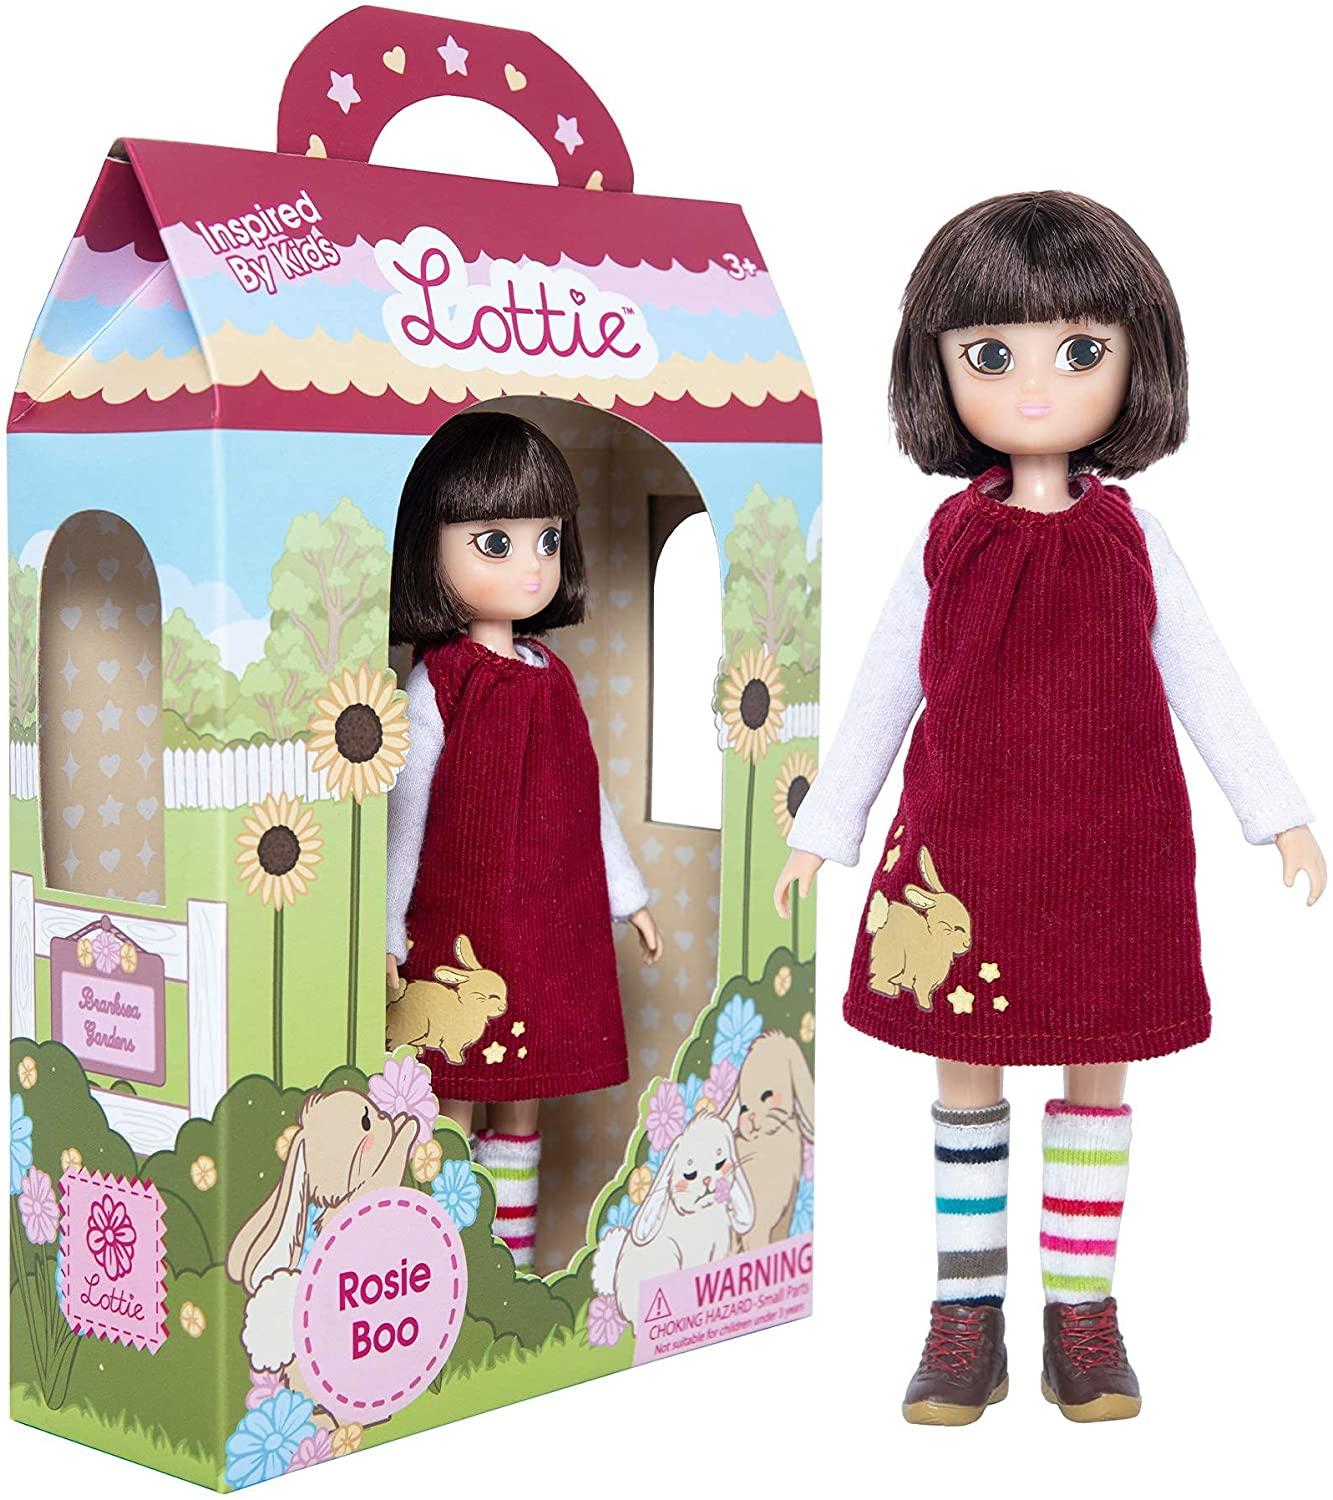 Rosie Boo Lottie Doll in red dress, stripy socks standing beside the box.